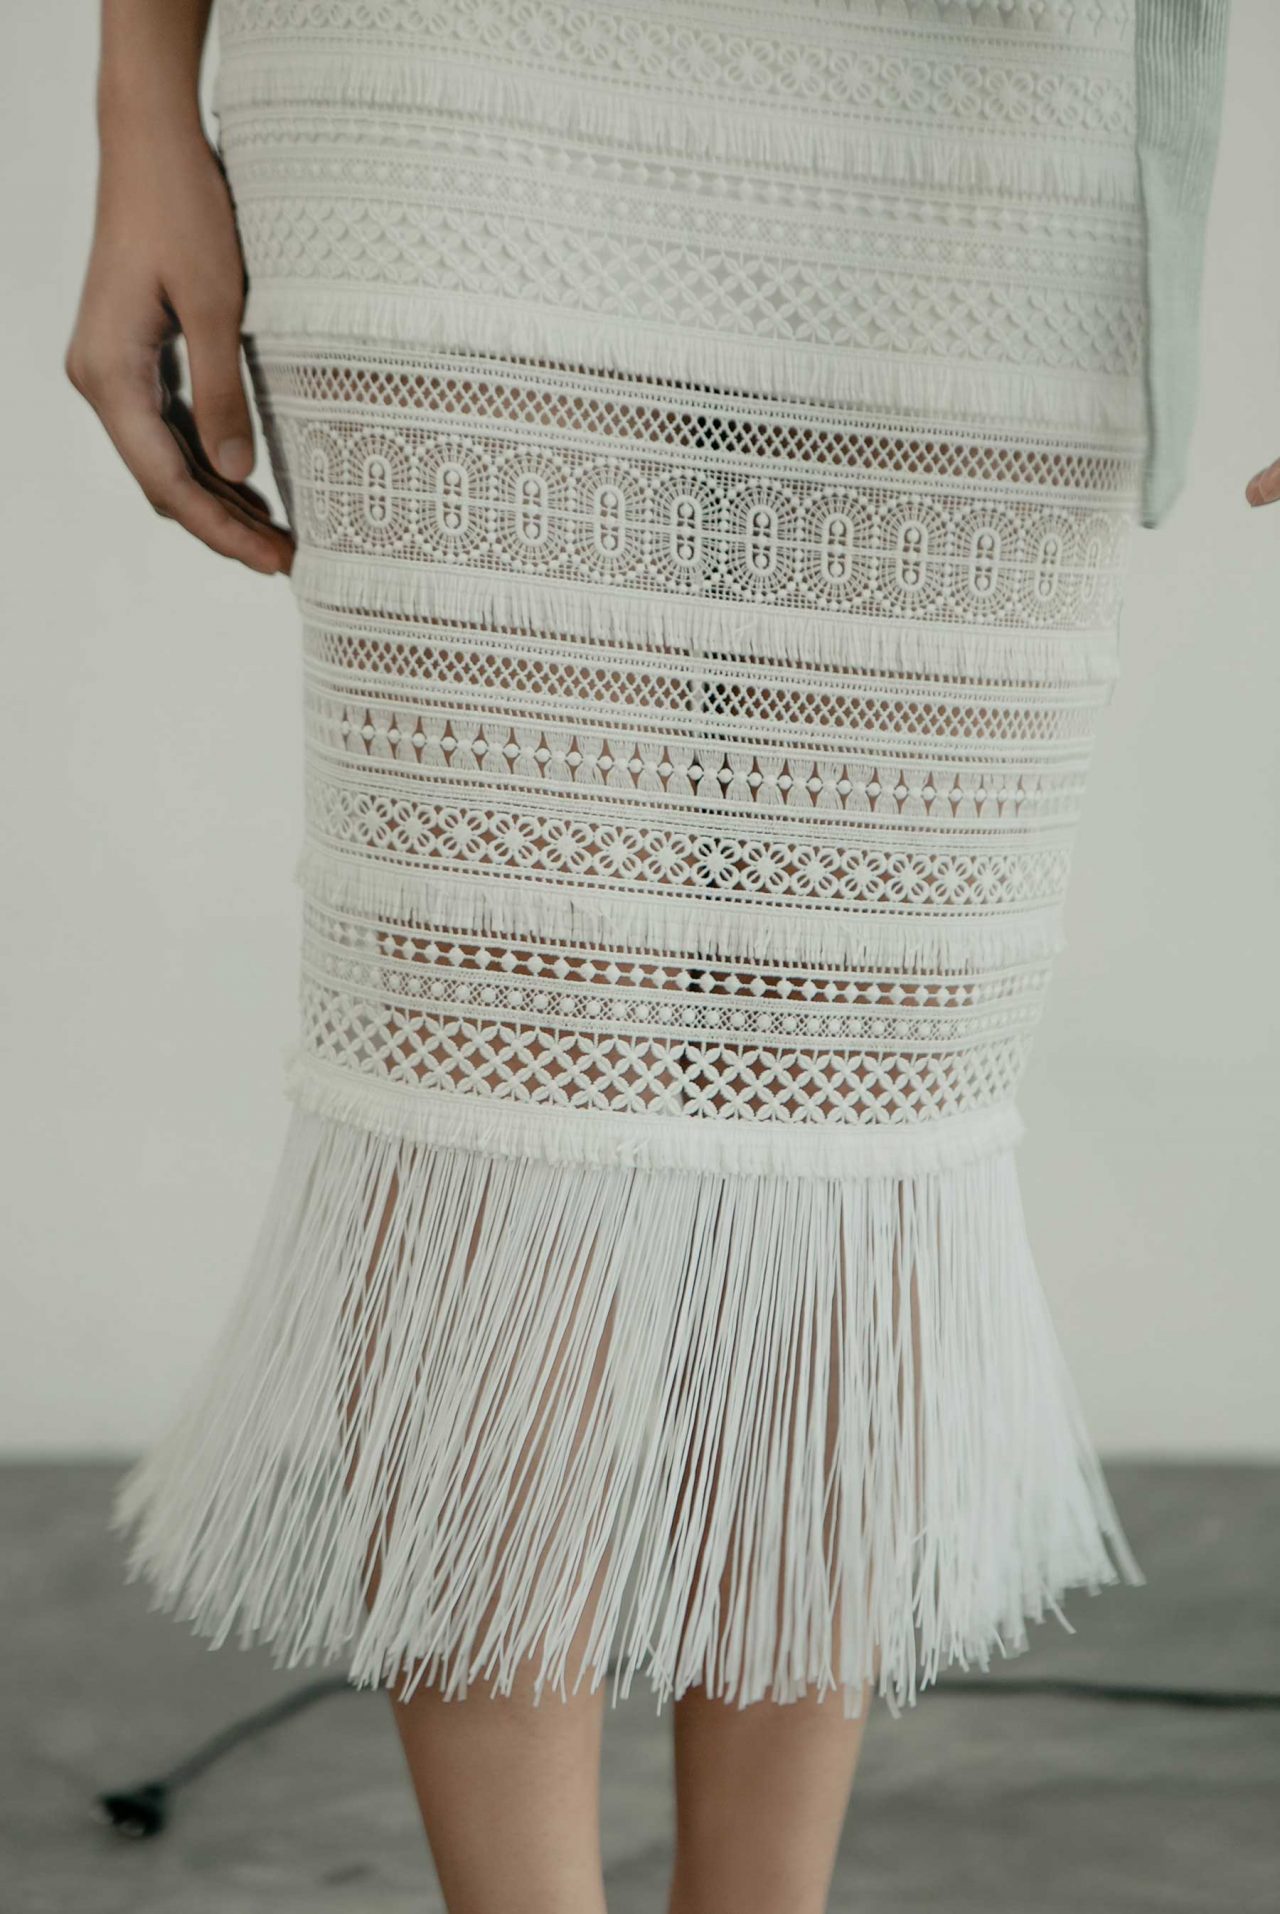 Crochet Fringe And Floral Skirt Pattern / Fringe skirt hula skirt